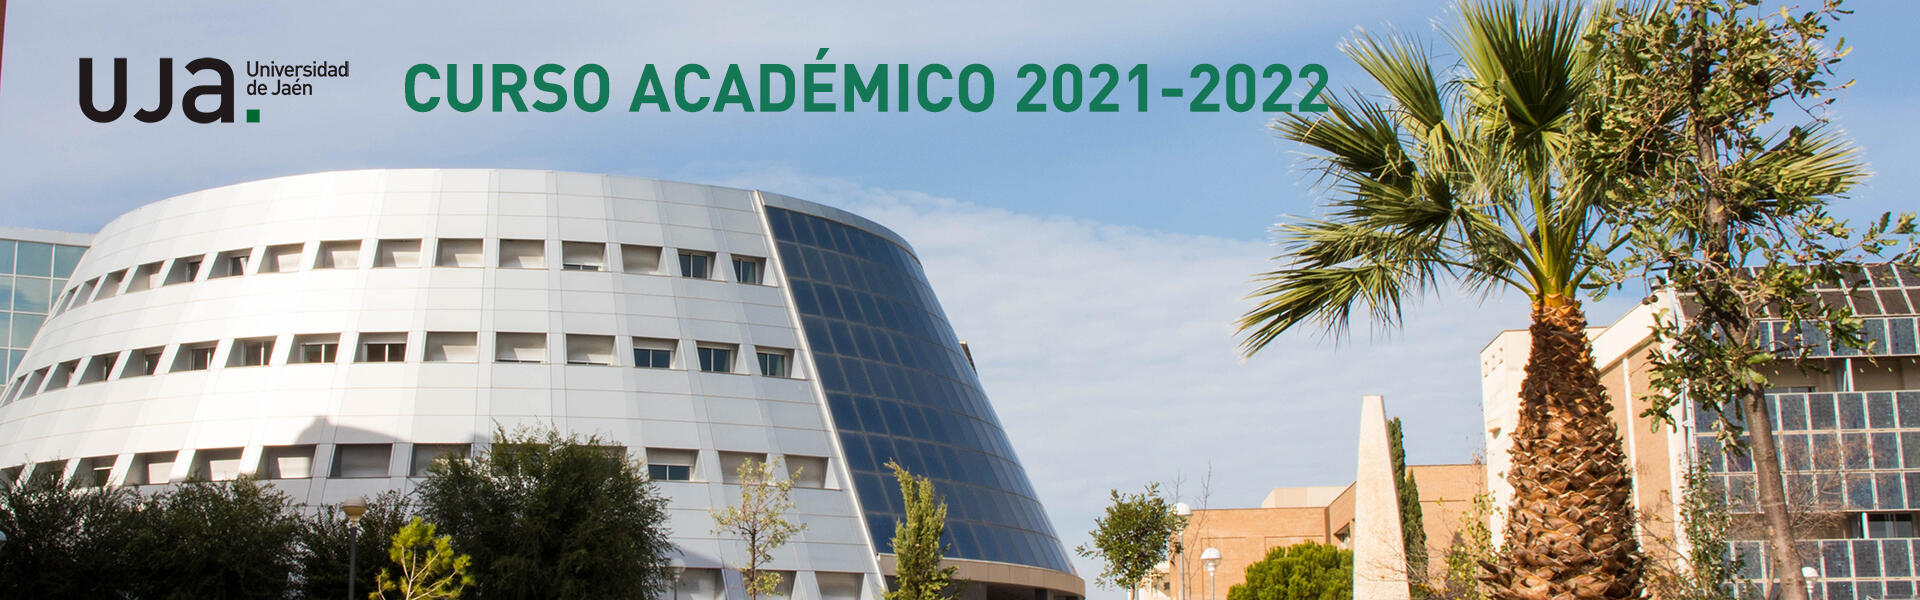 Curso académico 2021-2022 en la Universidad de Jaén